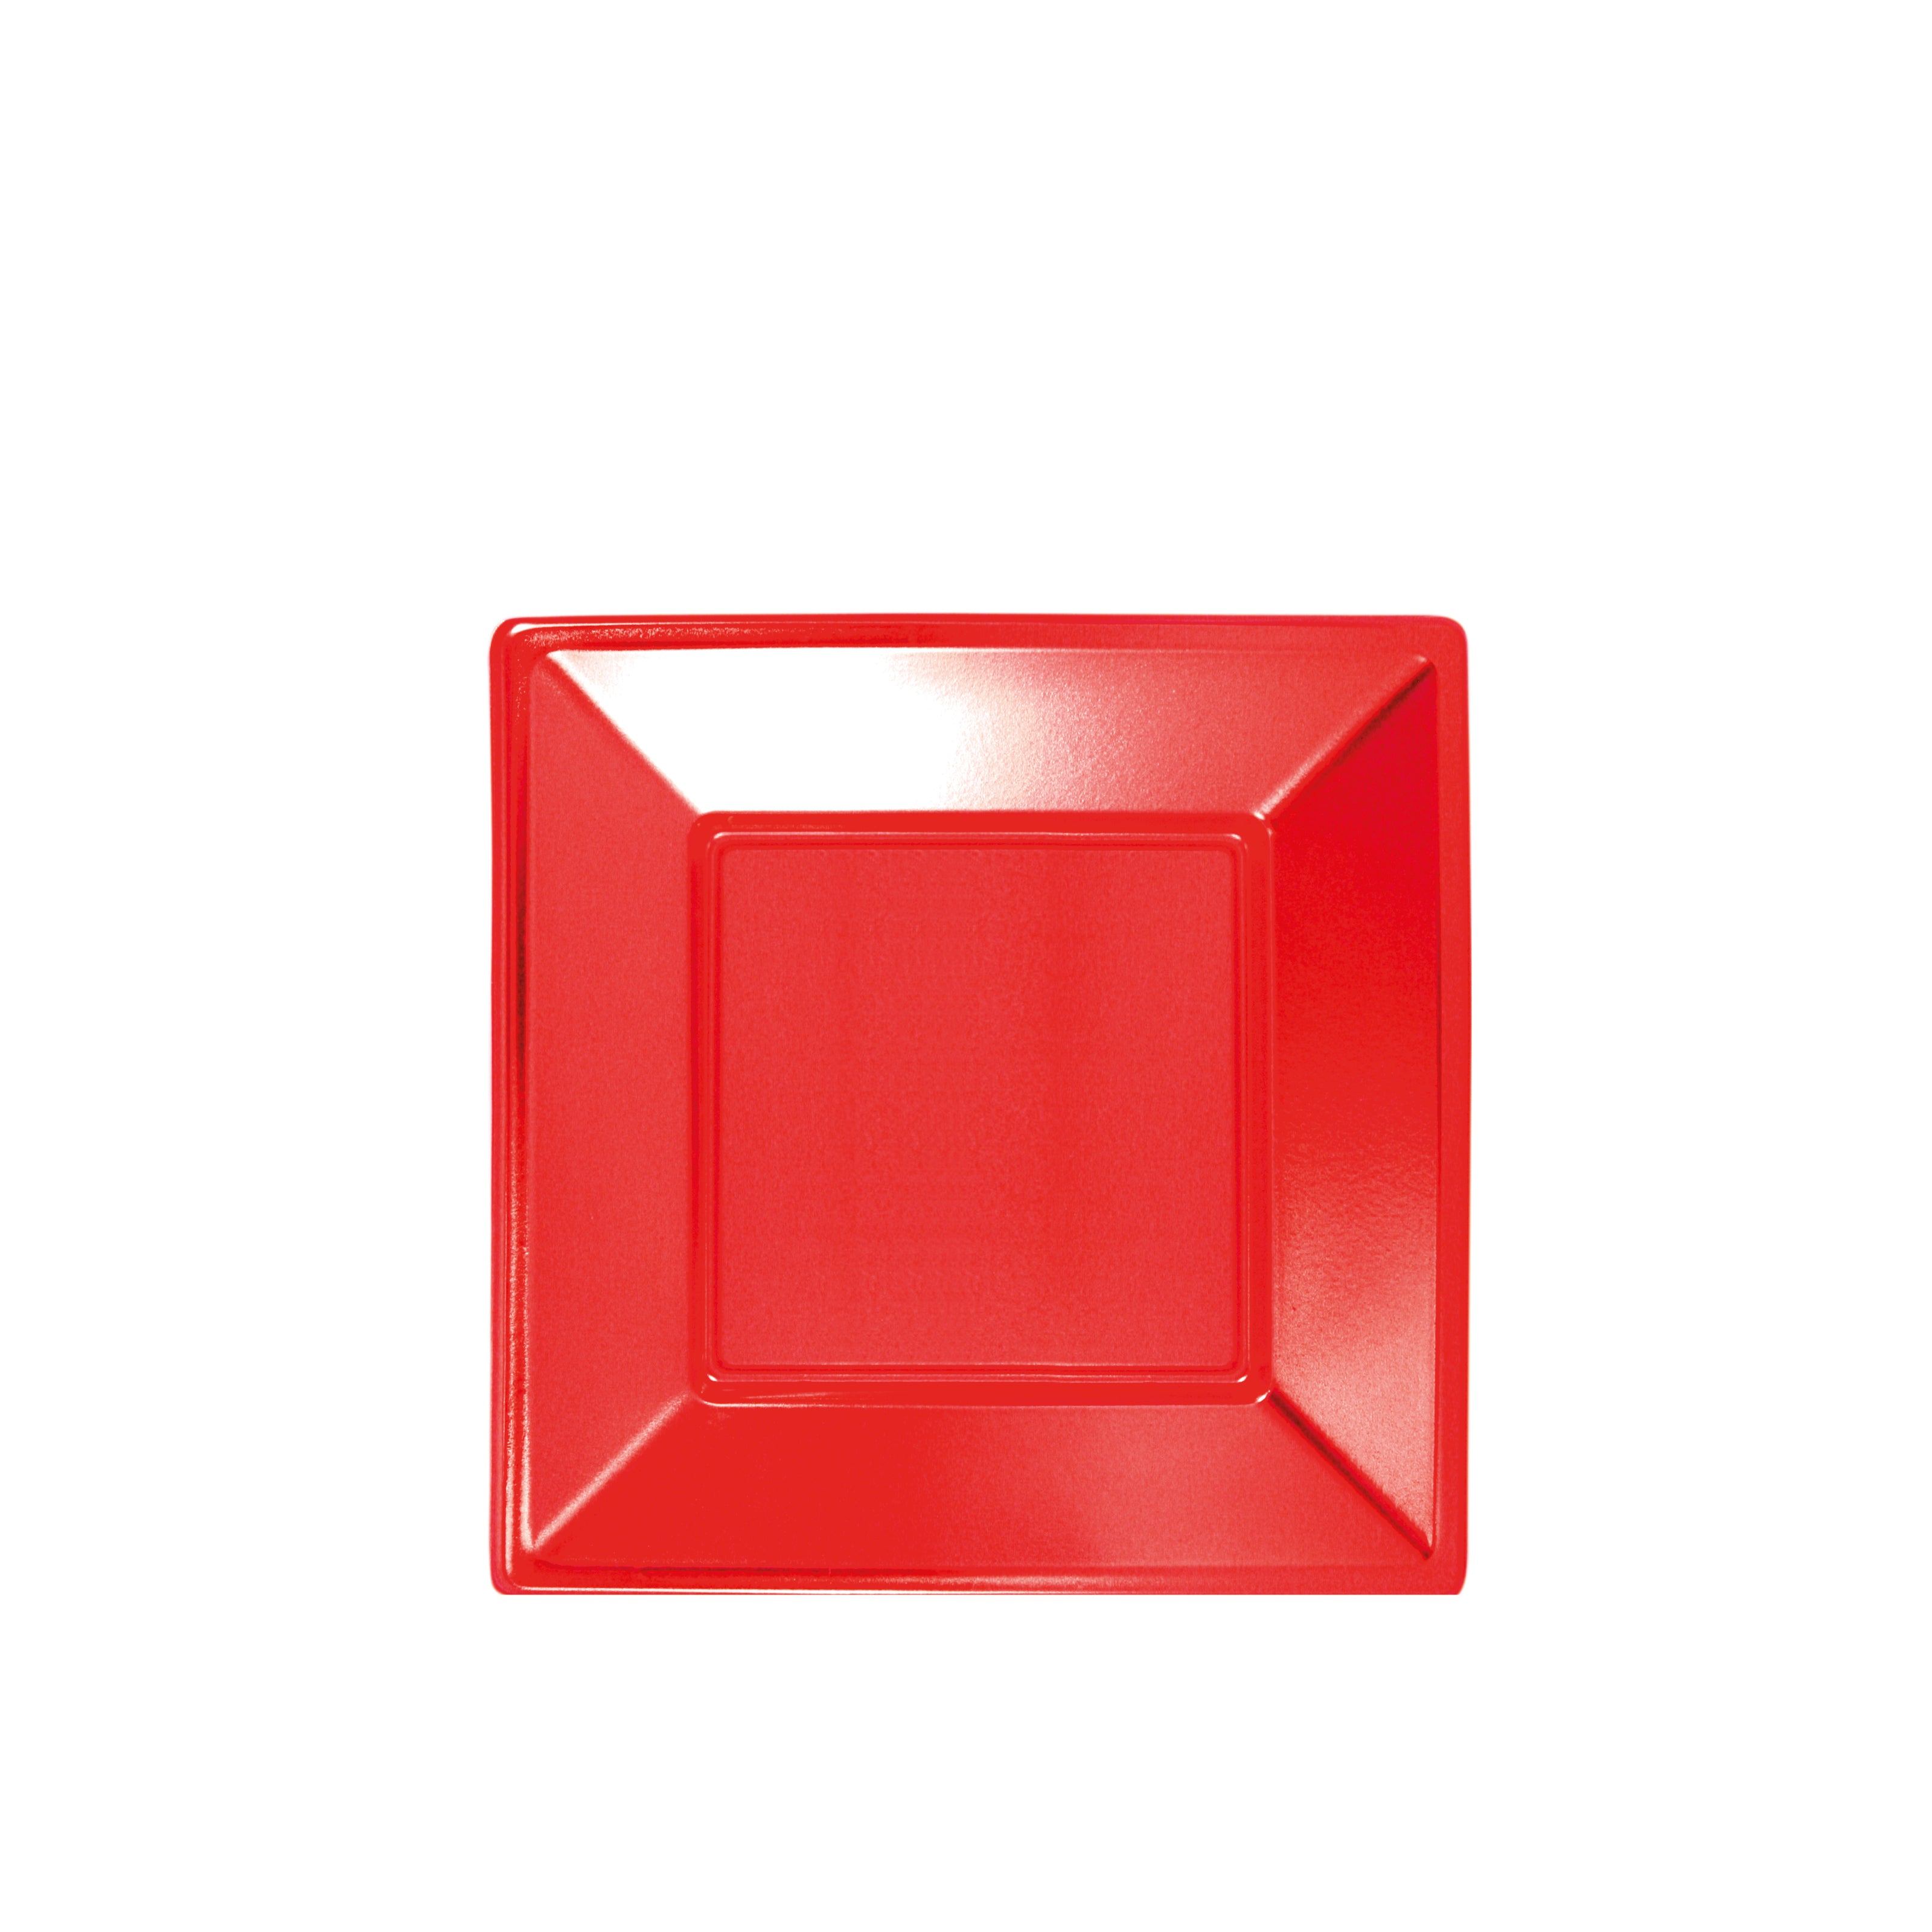 Plato Plástico Llano Cuadrado Metalizado 17 x 17 cm Rojo